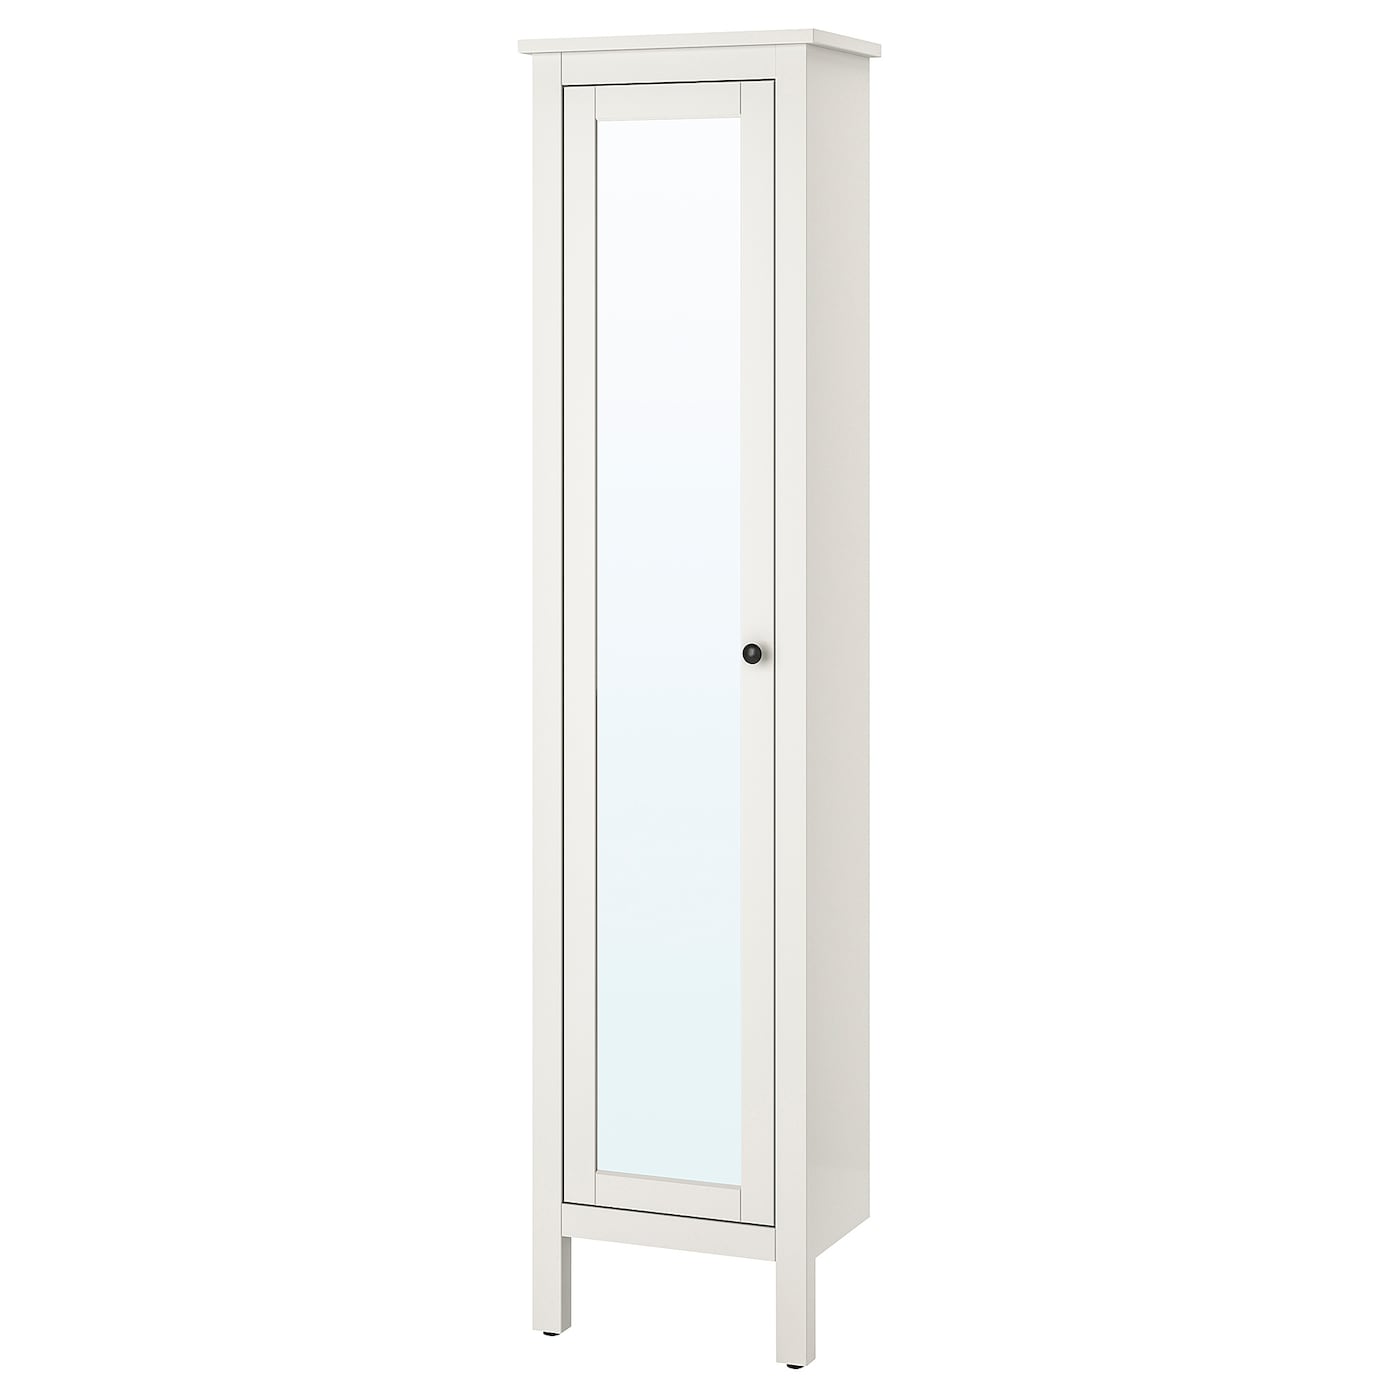 Высокий шкаф для ванной - IKEA HEMNES/ХЕМНЭС ИКЕА, 31x49x200 см, белый